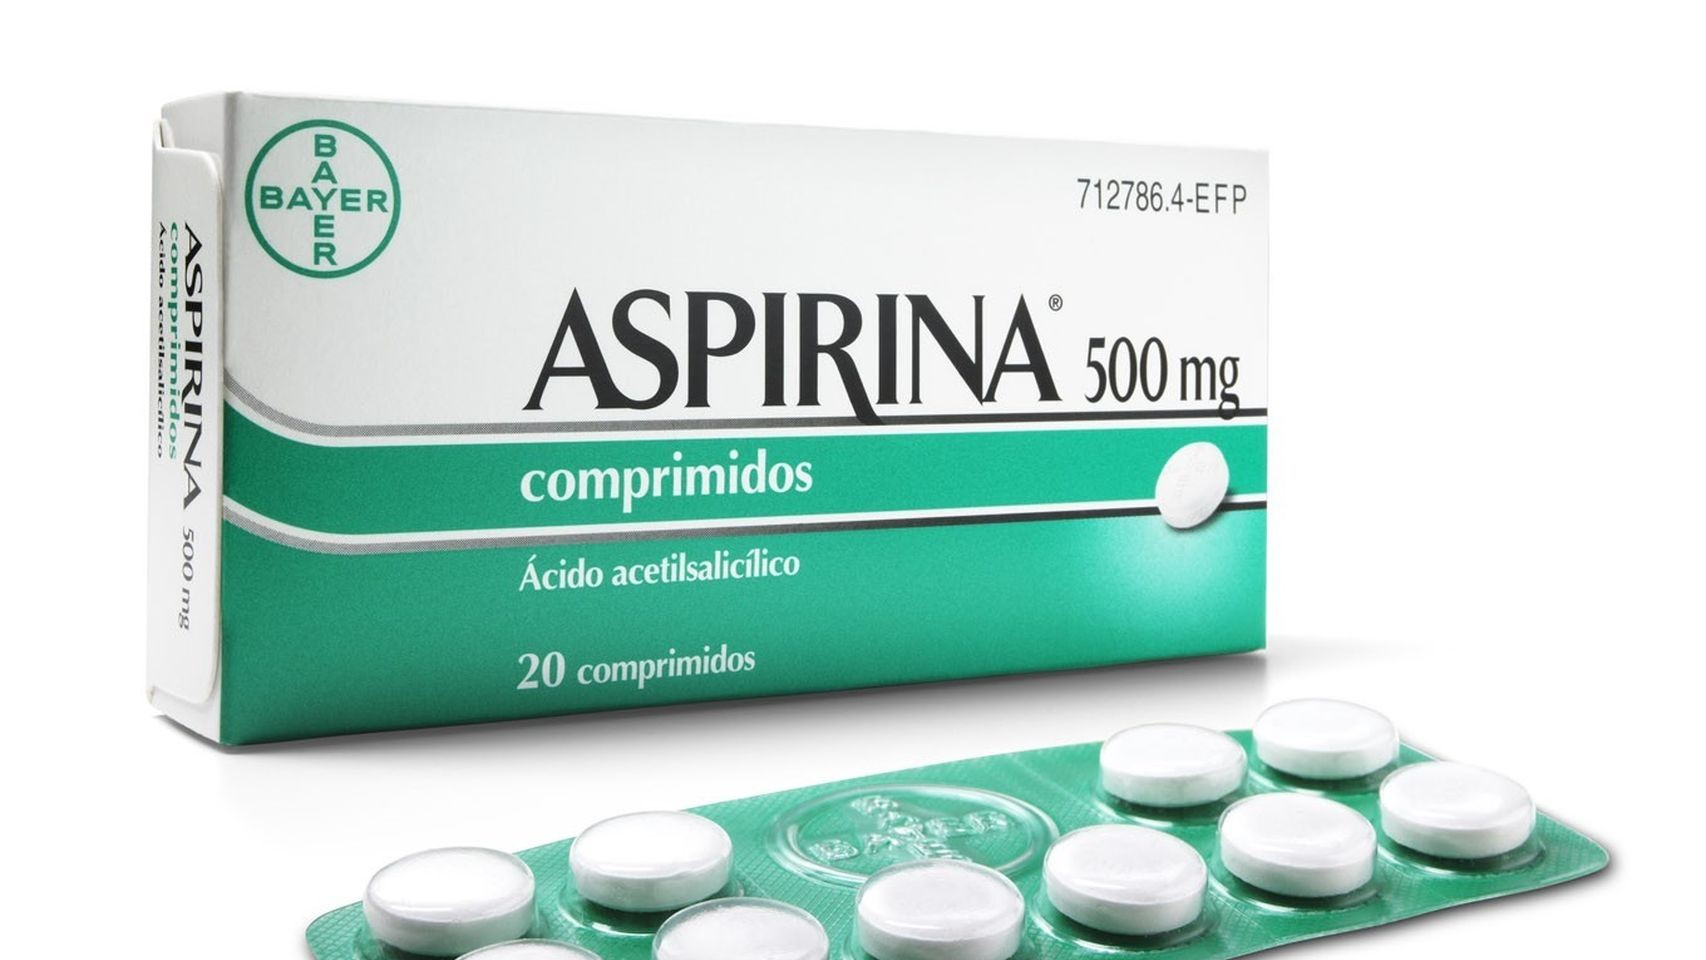 Marrja e përditshme e aspirinës mund të shkaktojë dëme serioze 